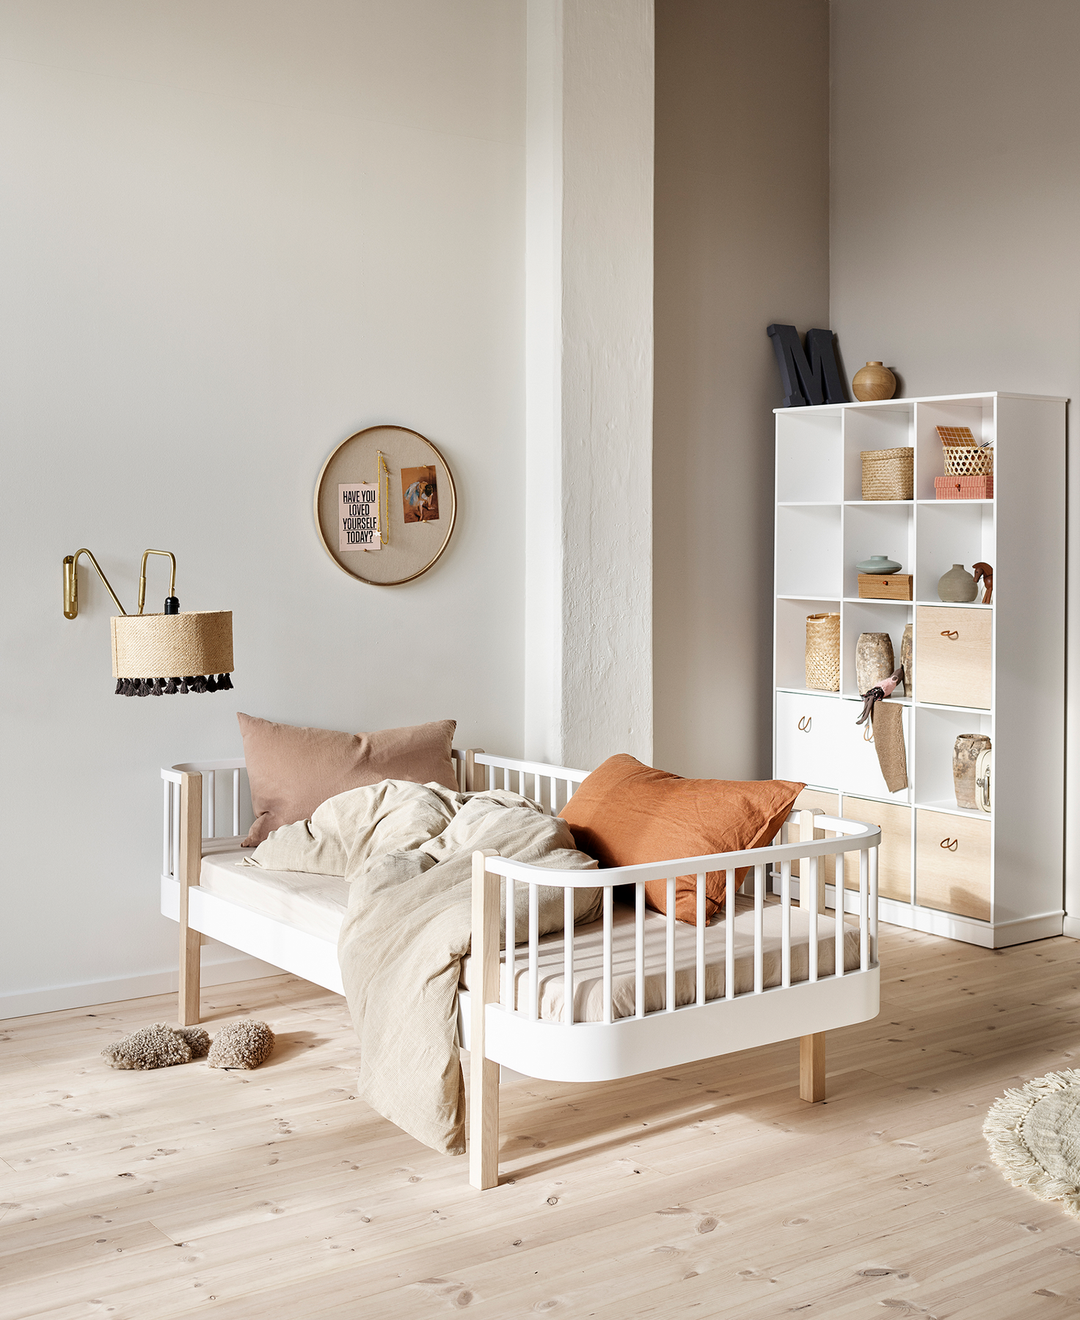 Oliver Furniture Wood Day White / Oak bed in Scandinavische stijl, te gebruiken als dagbed en sofa, met elegante geoliede eiken poten.